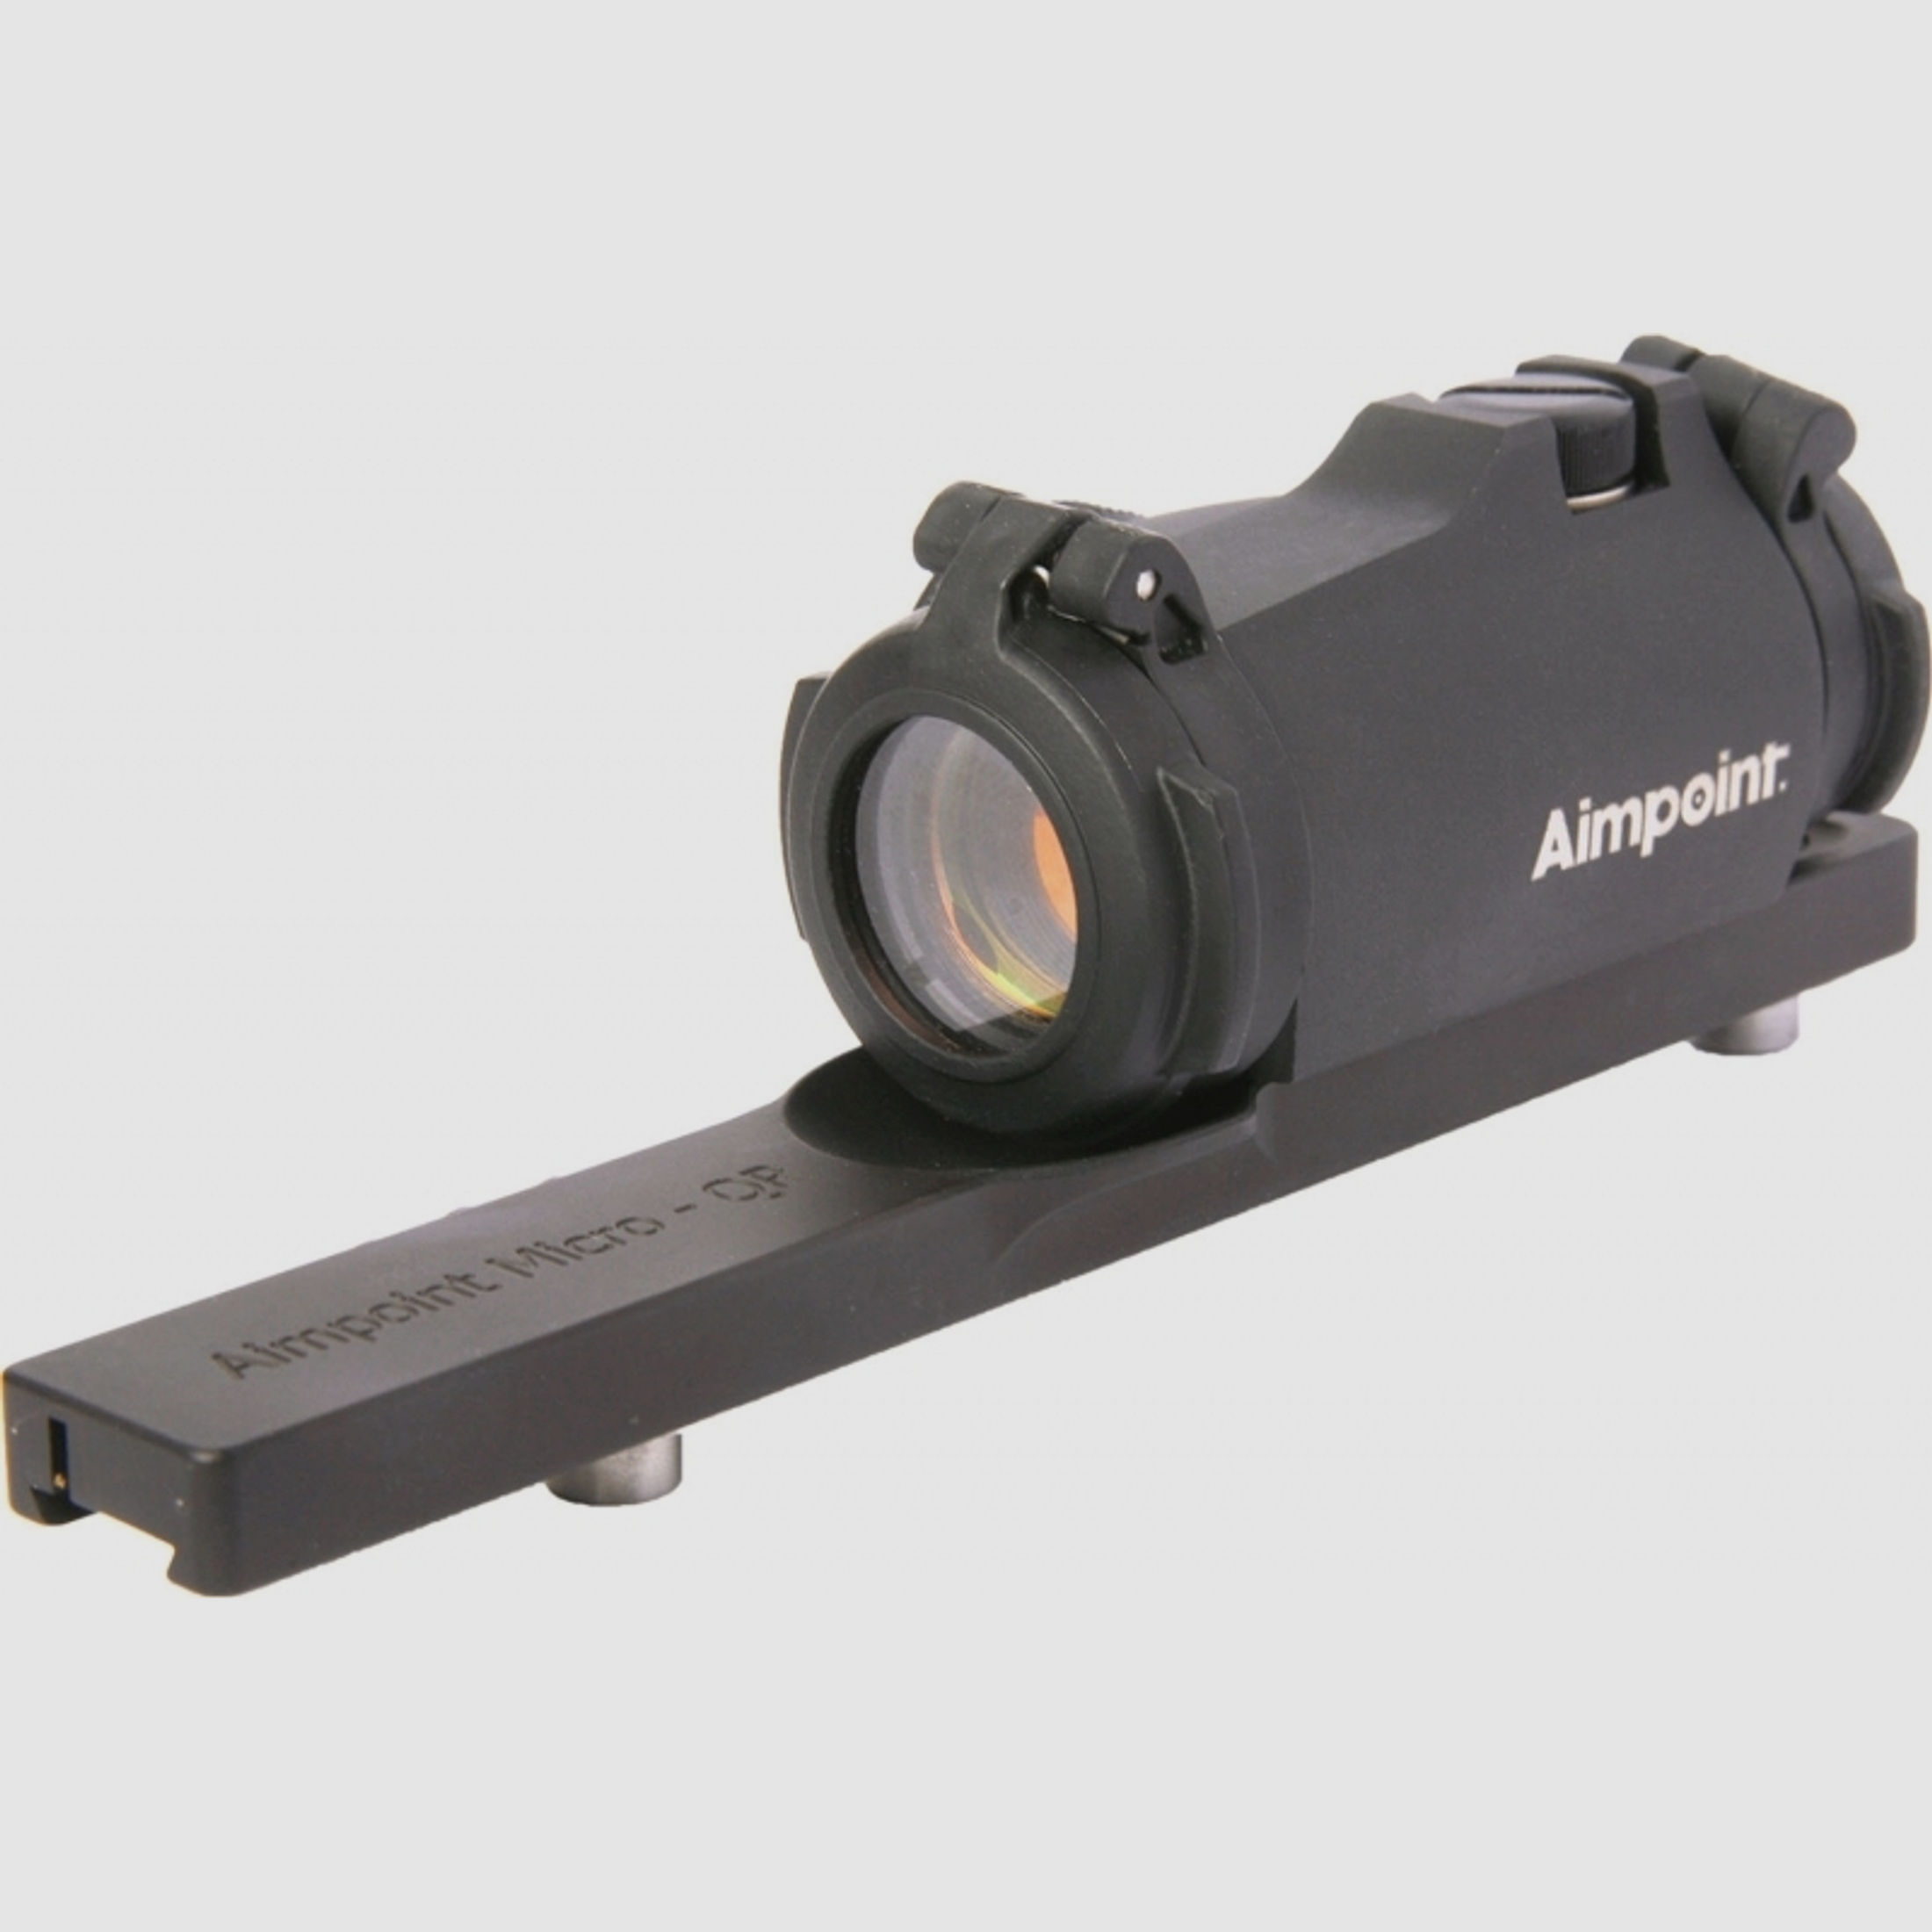 Aimpoint Micro H-2 Leuchtpunktvisier mit Montageschiene f. Leupold QR